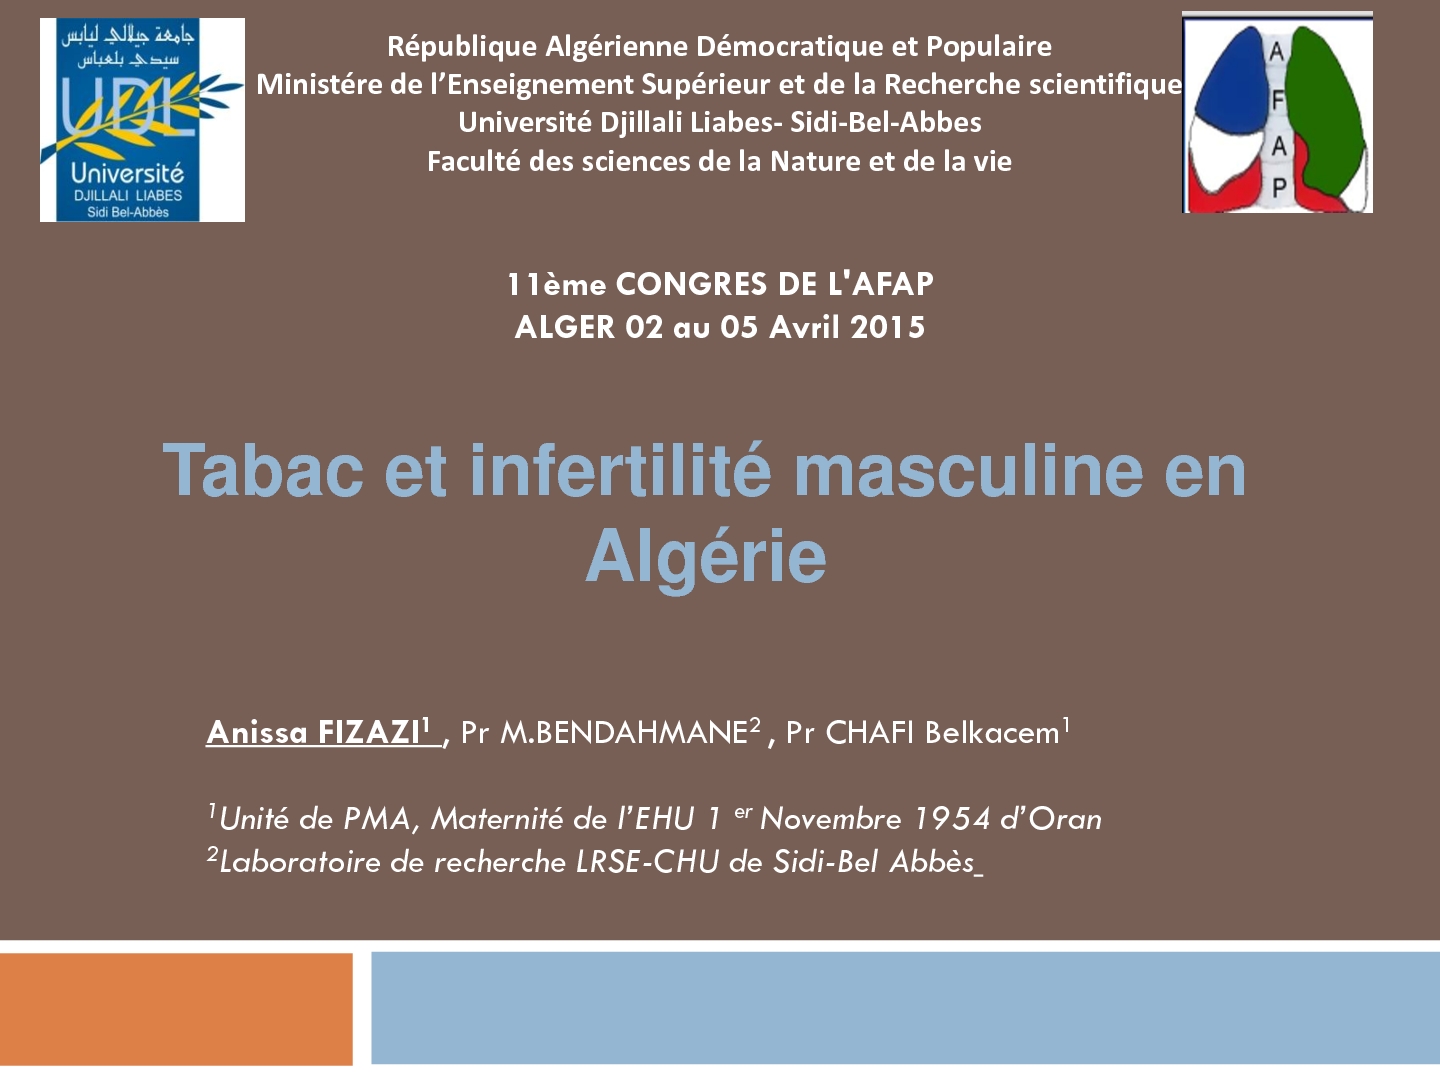 Tabac et infertilité masculine en Algérie. Anissa Fizazi